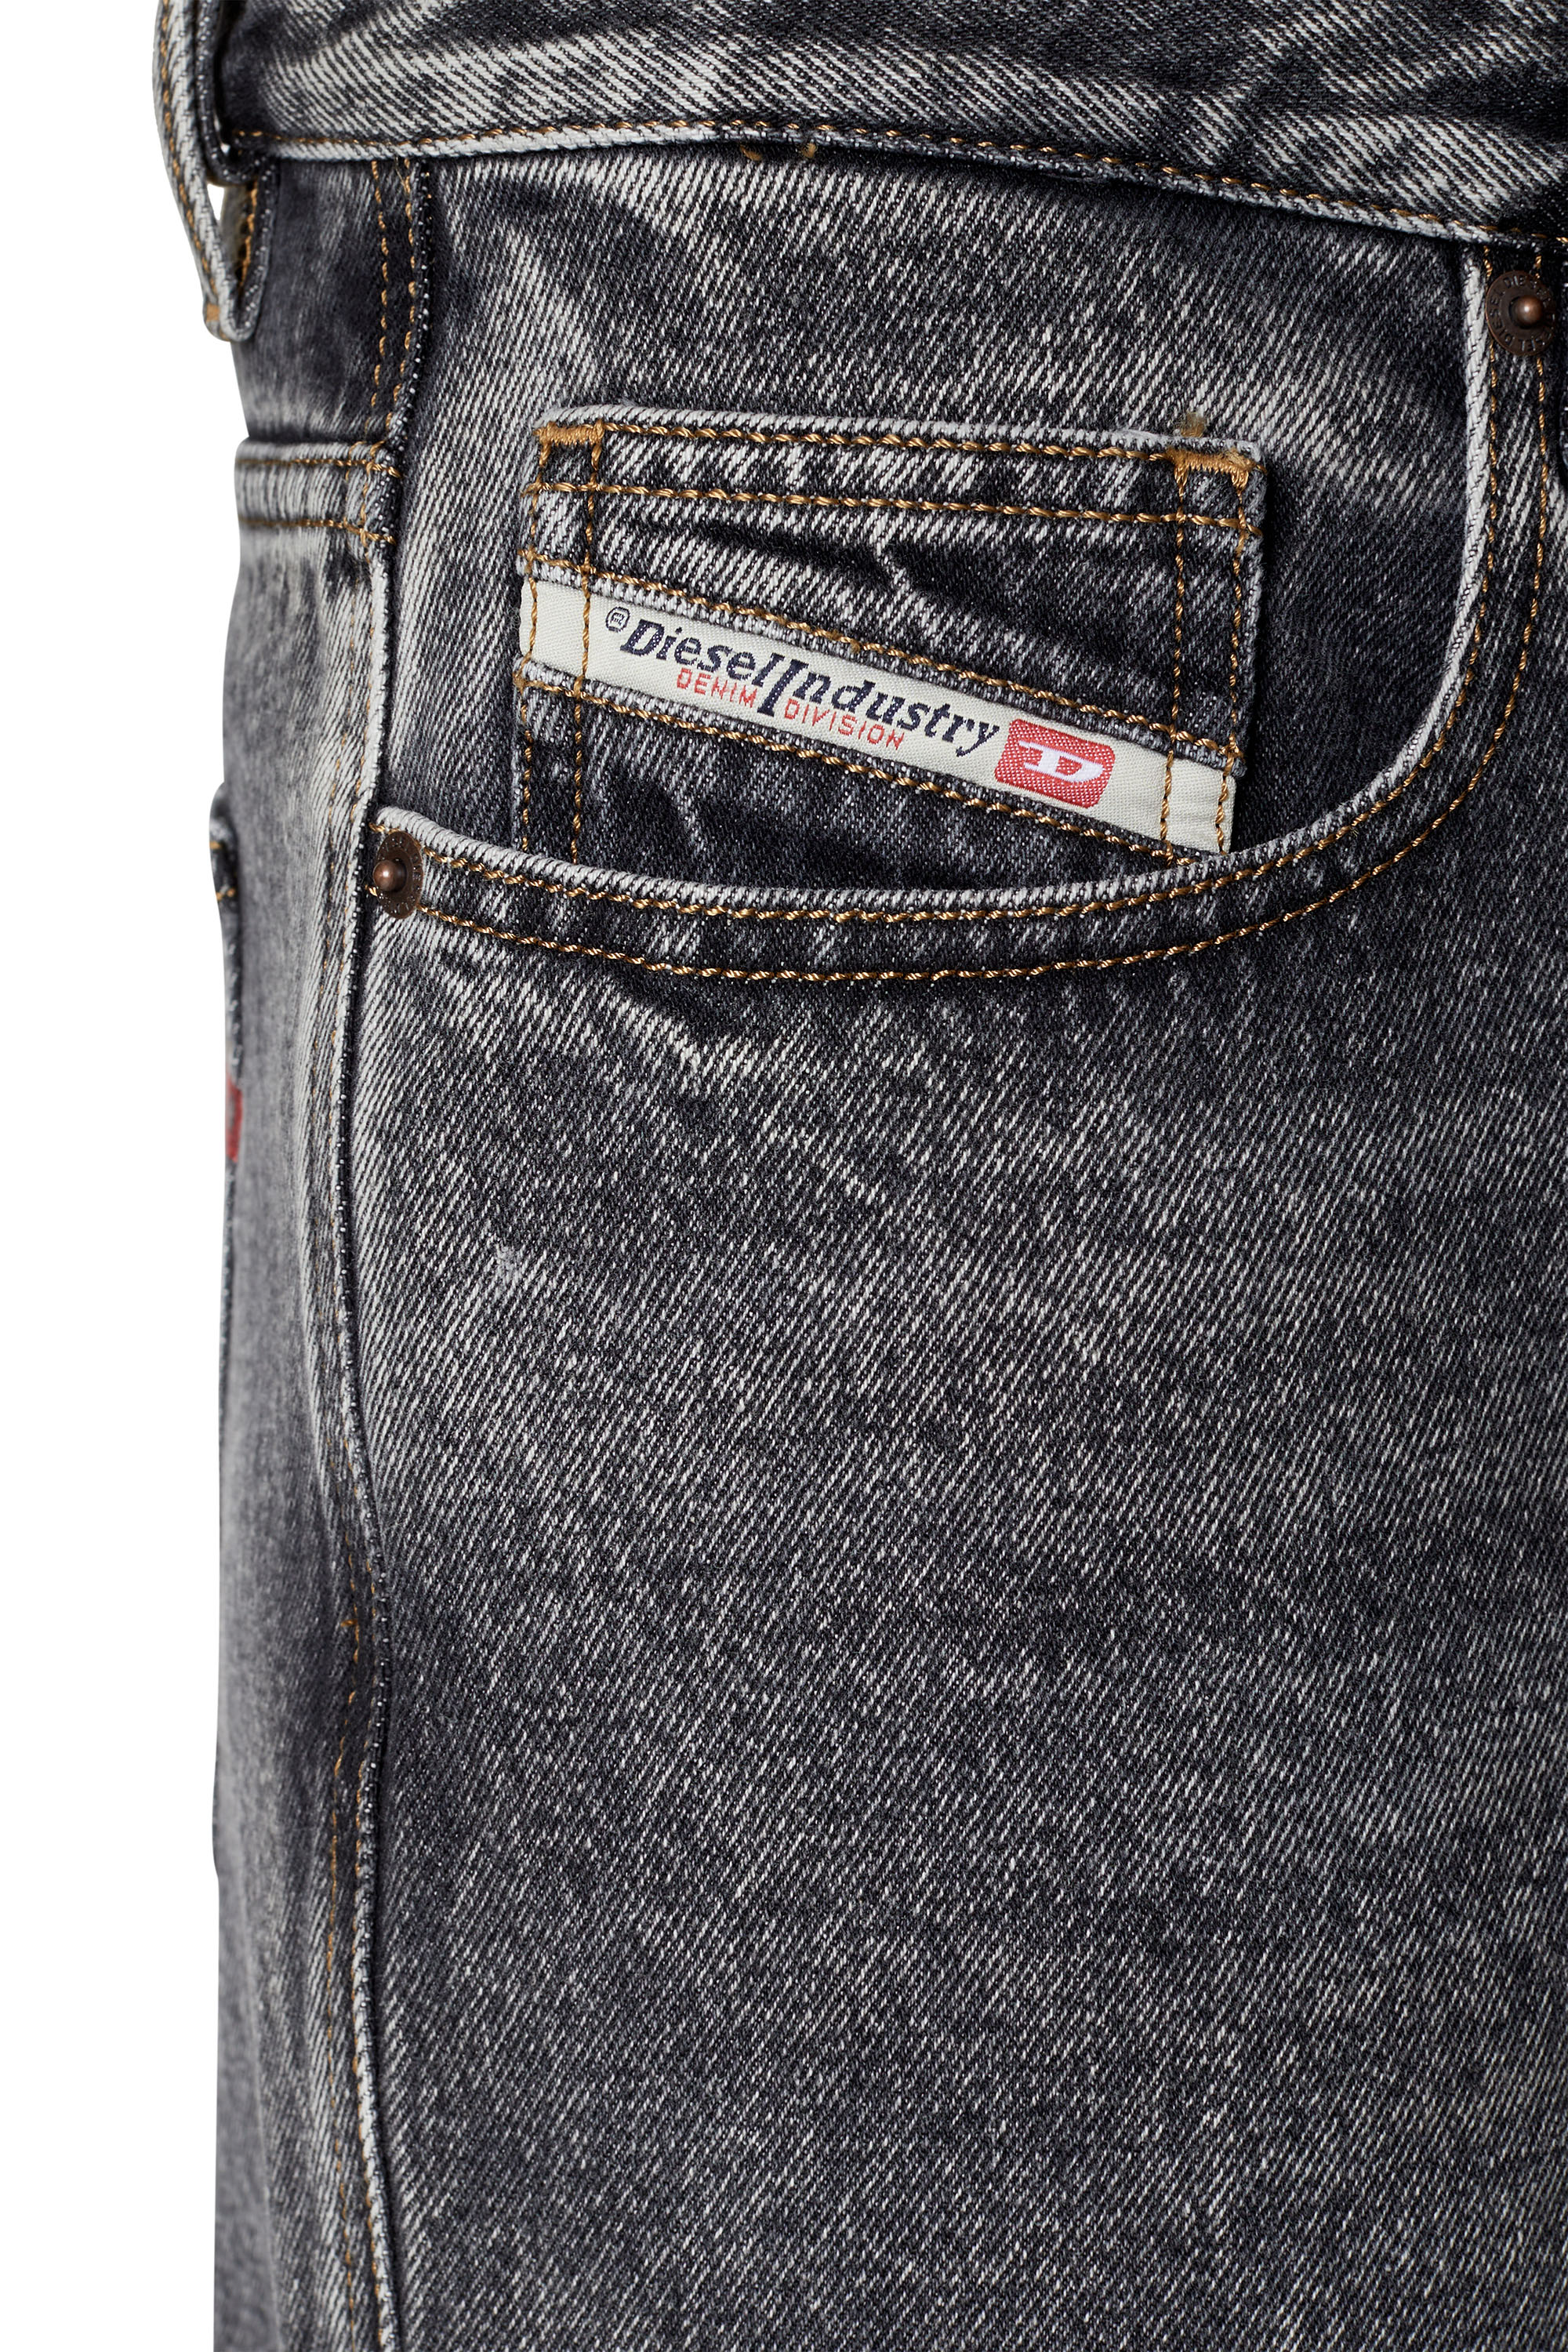 Diesel jeans weiß - Der Gewinner 